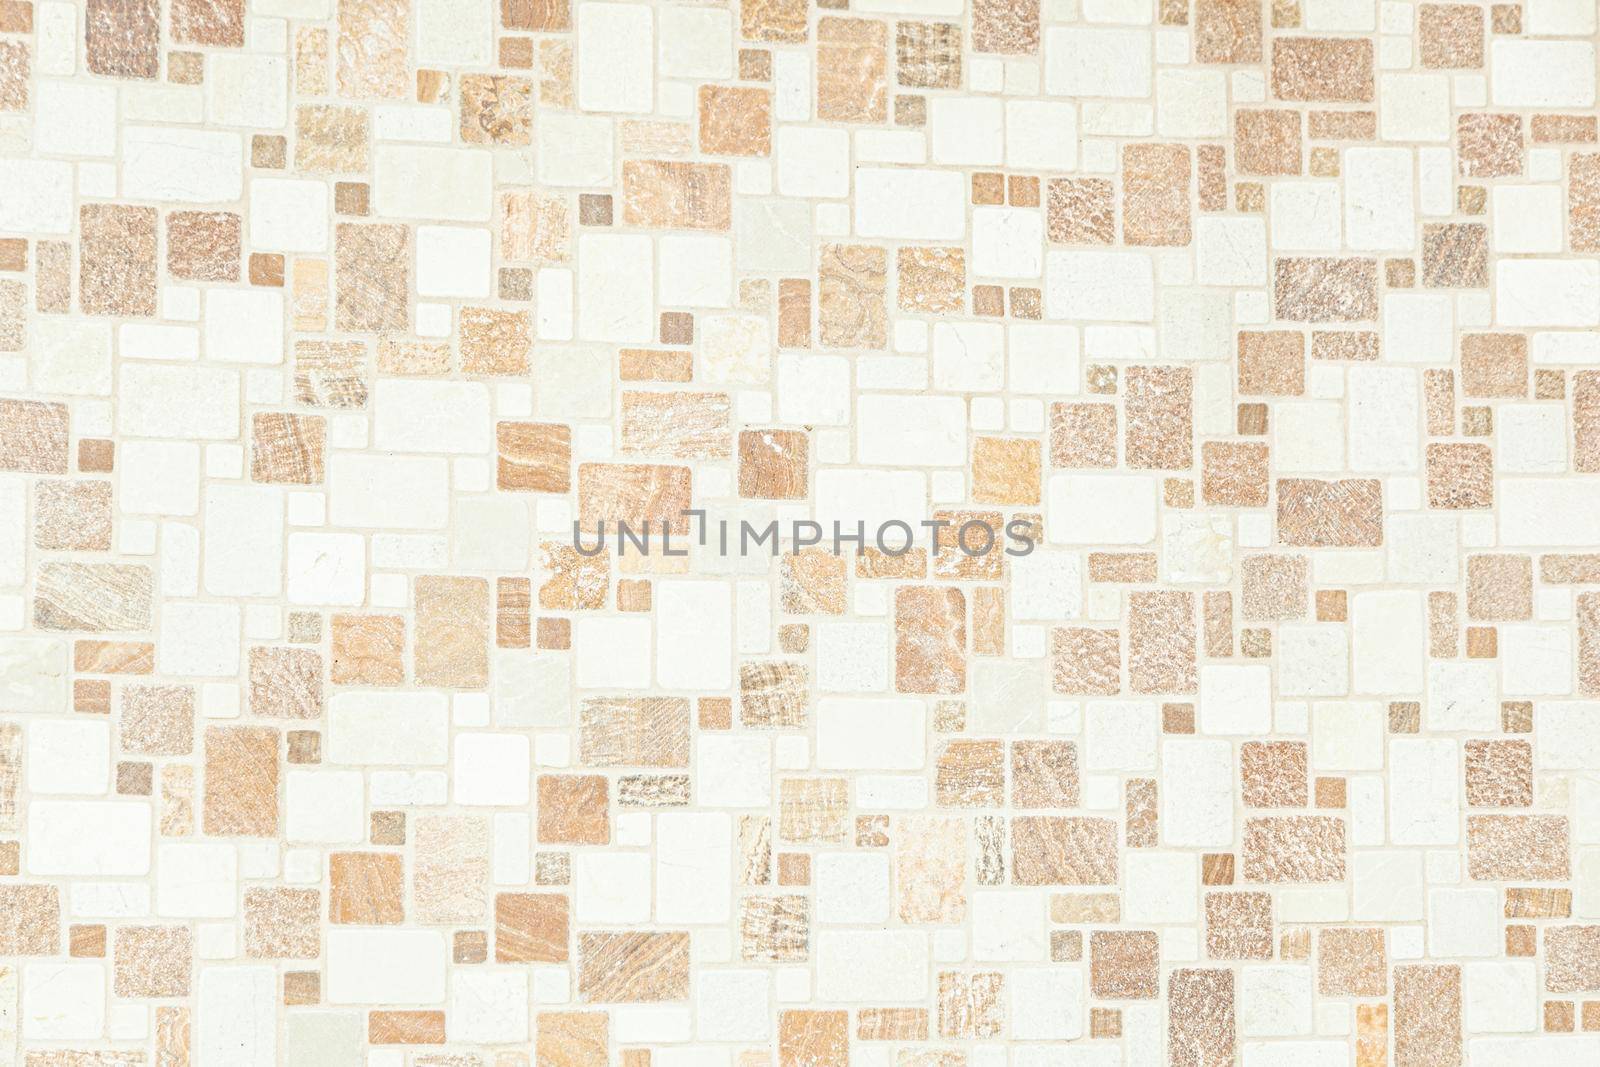 small colored square tiles in interior design, decorative mosaic